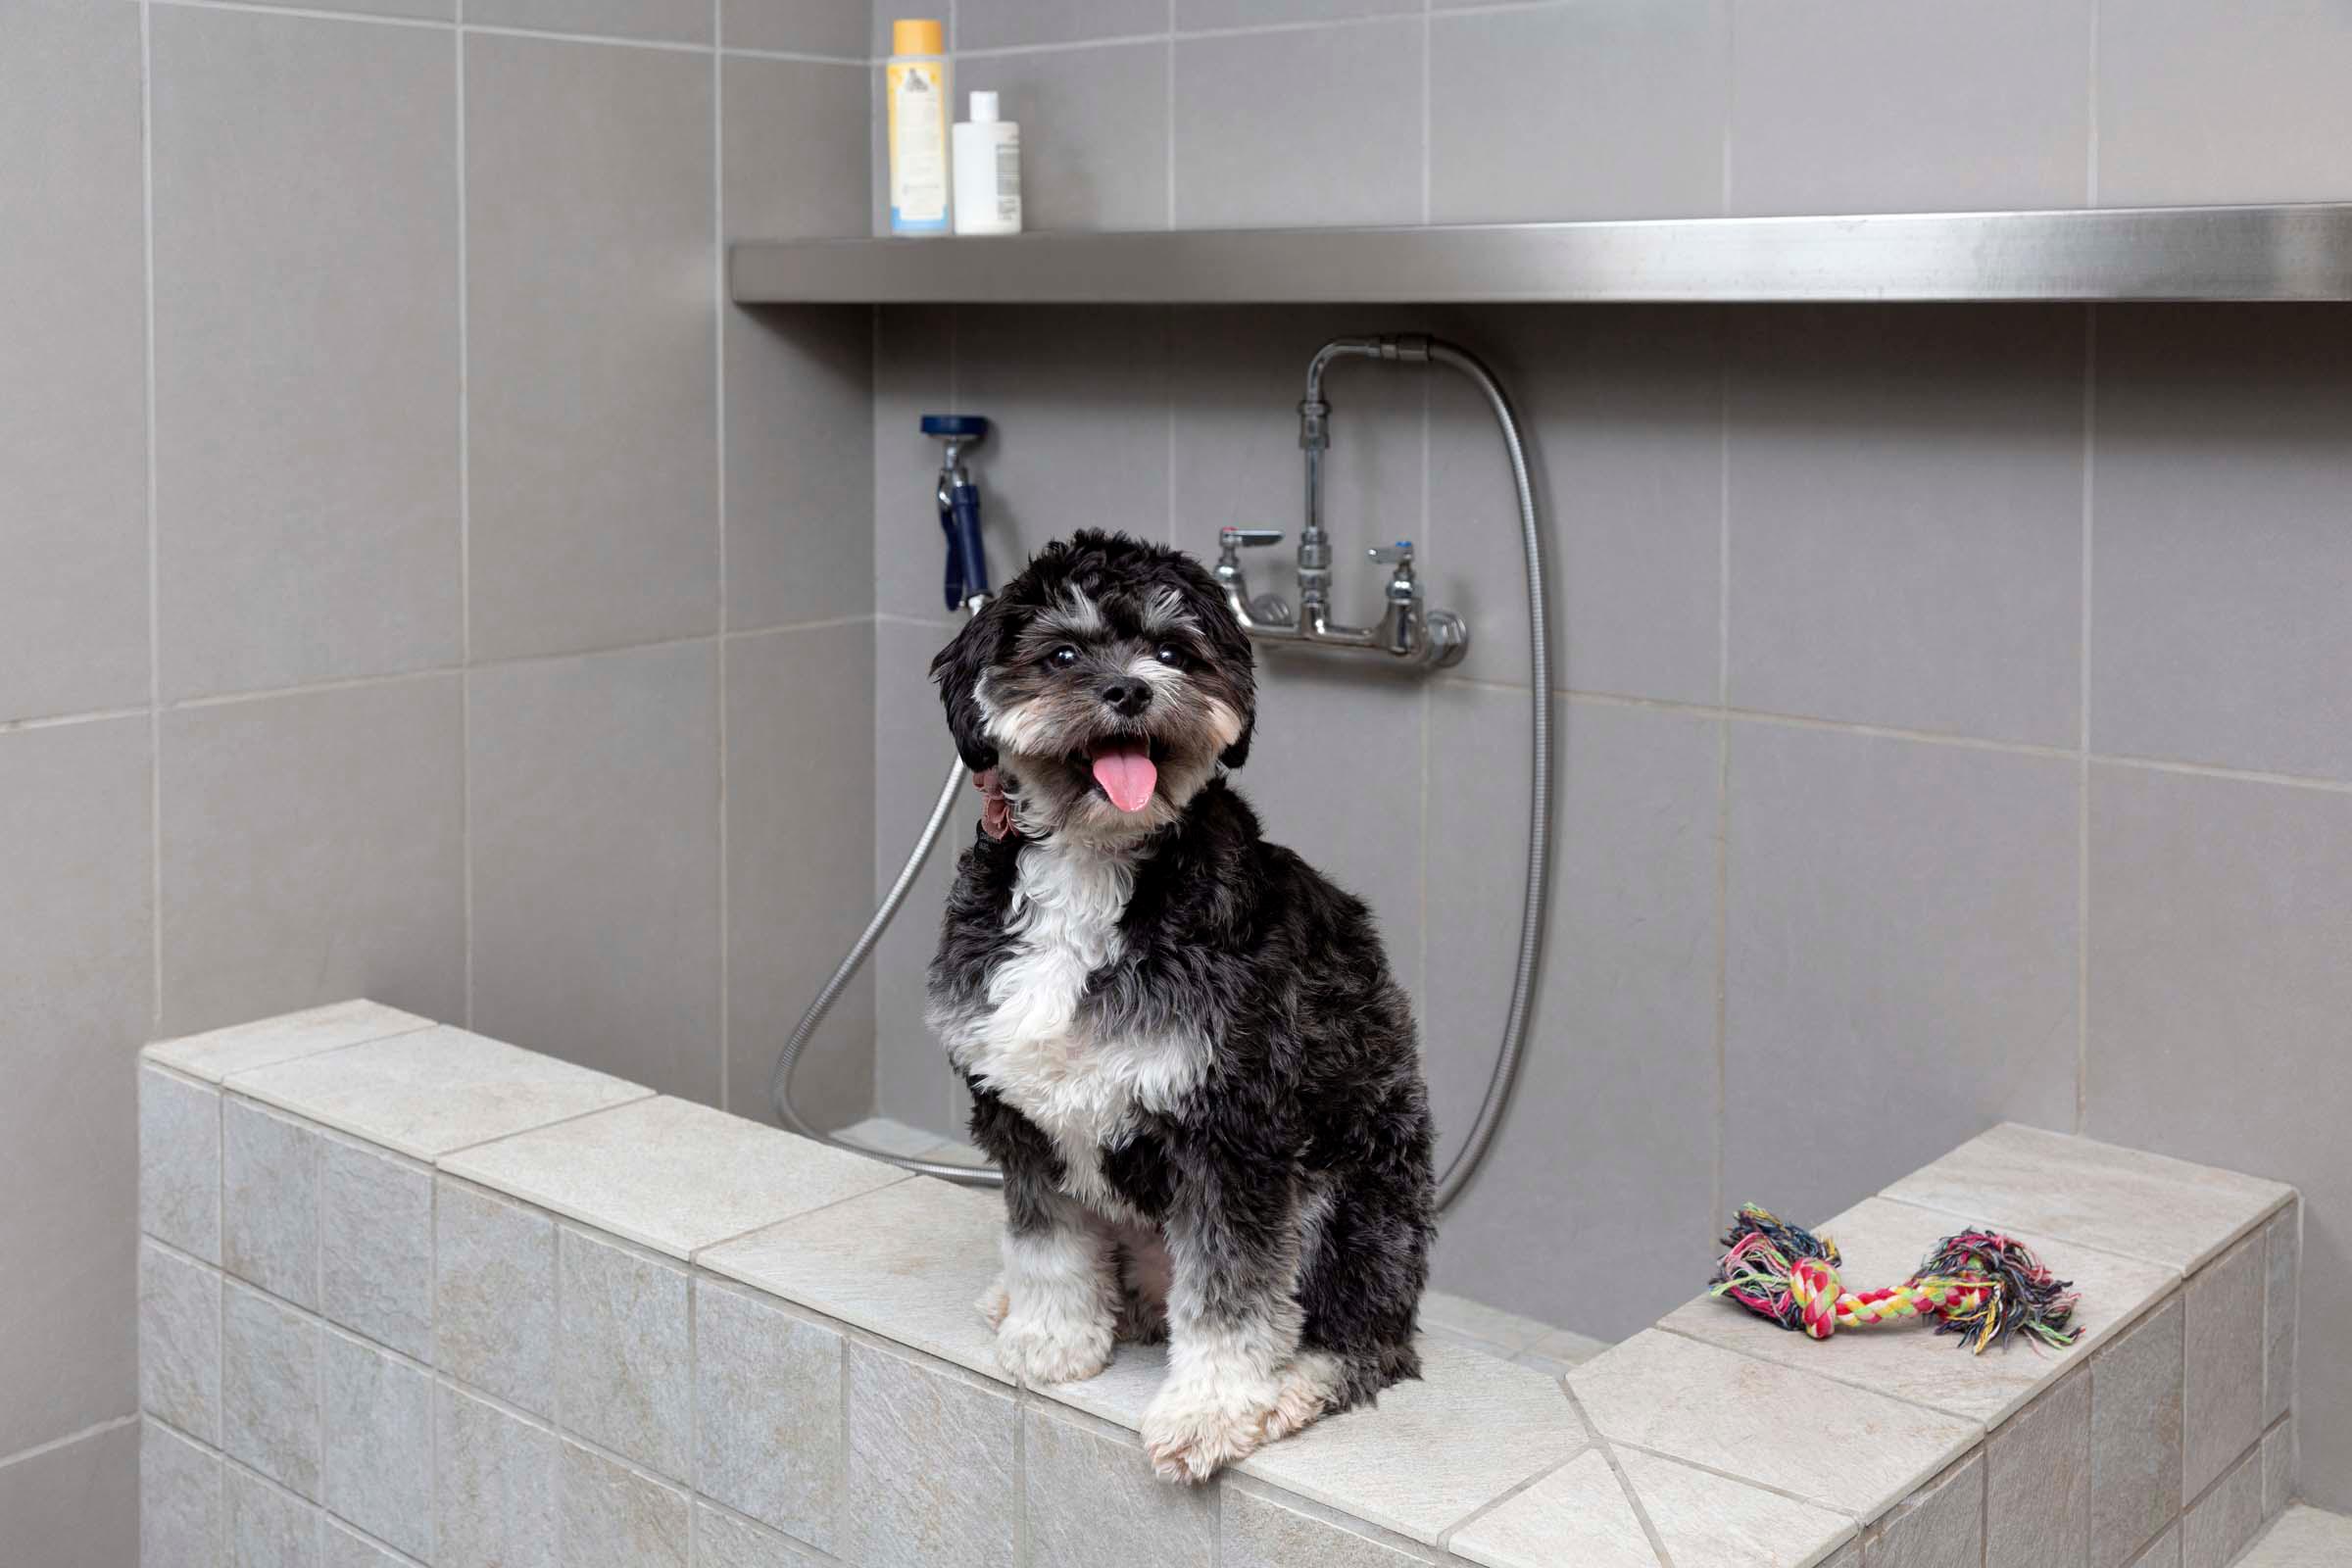 Paw Spa dog washing station with dog model.